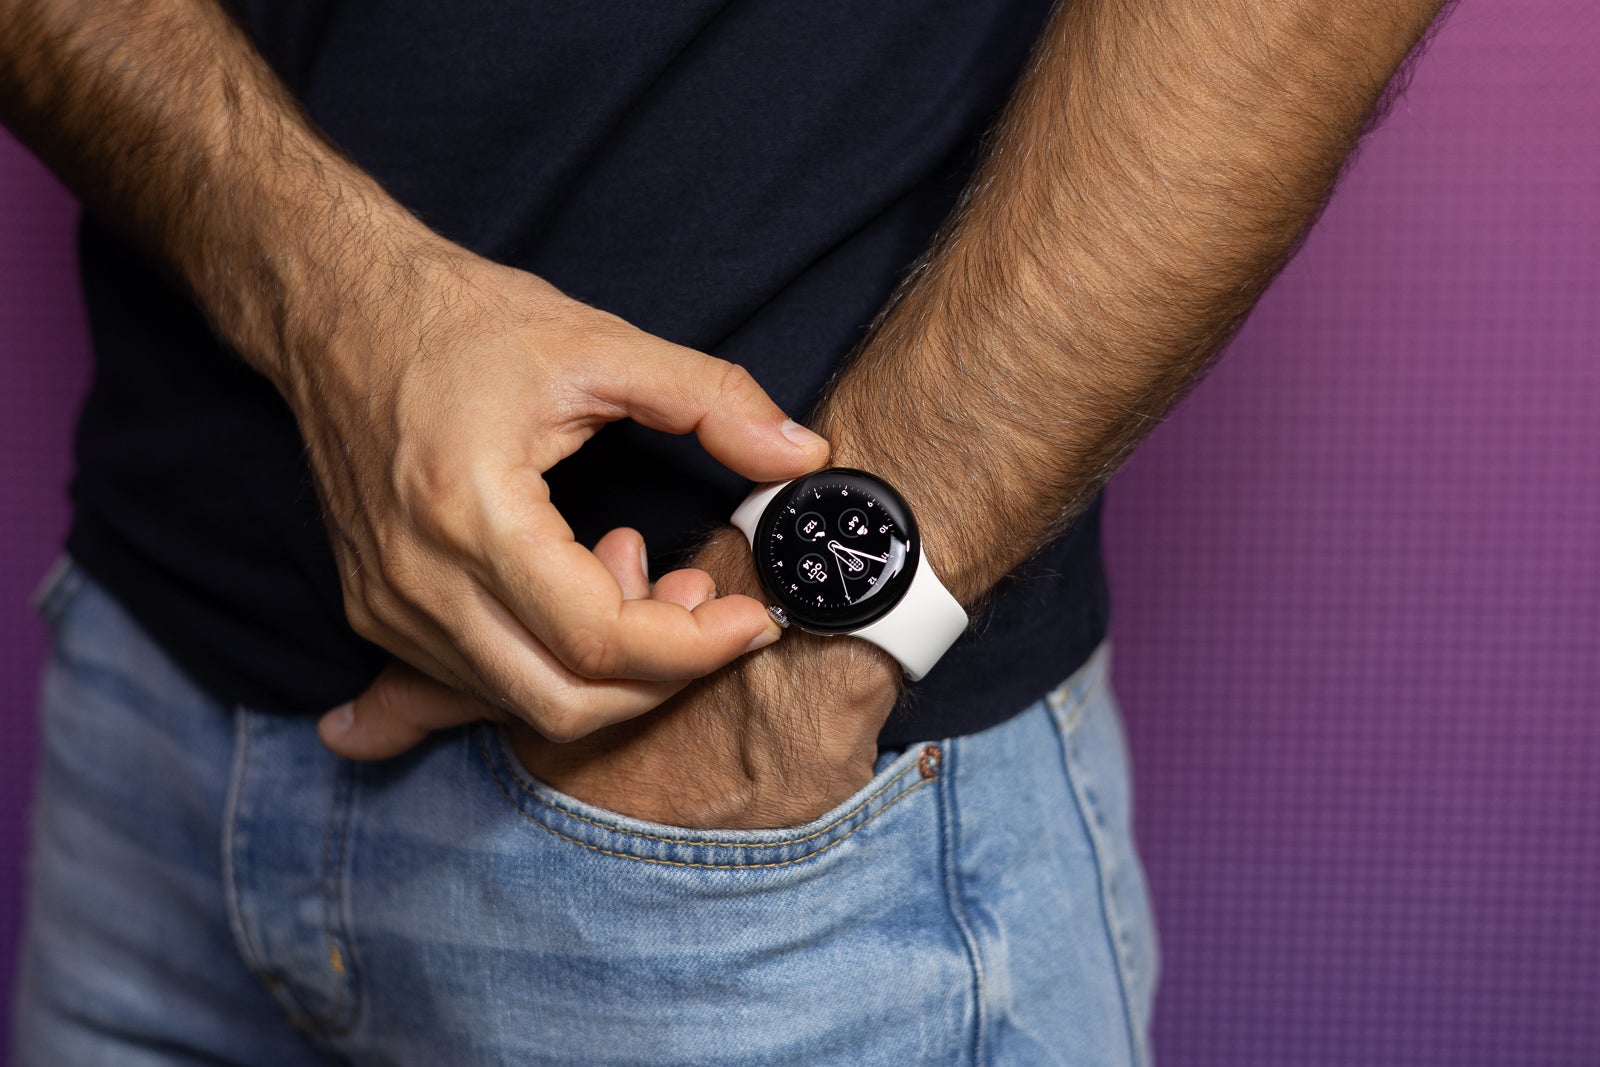 Los relojes inteligentes modernos son definitivamente elegantes & nbsp; (Crédito de la imagen - PhoneArena) - ¿Son terriblemente poco prácticos los relojes inteligentes redondos?  Porque el Apple Watch rectangular tiene mucho más sentido